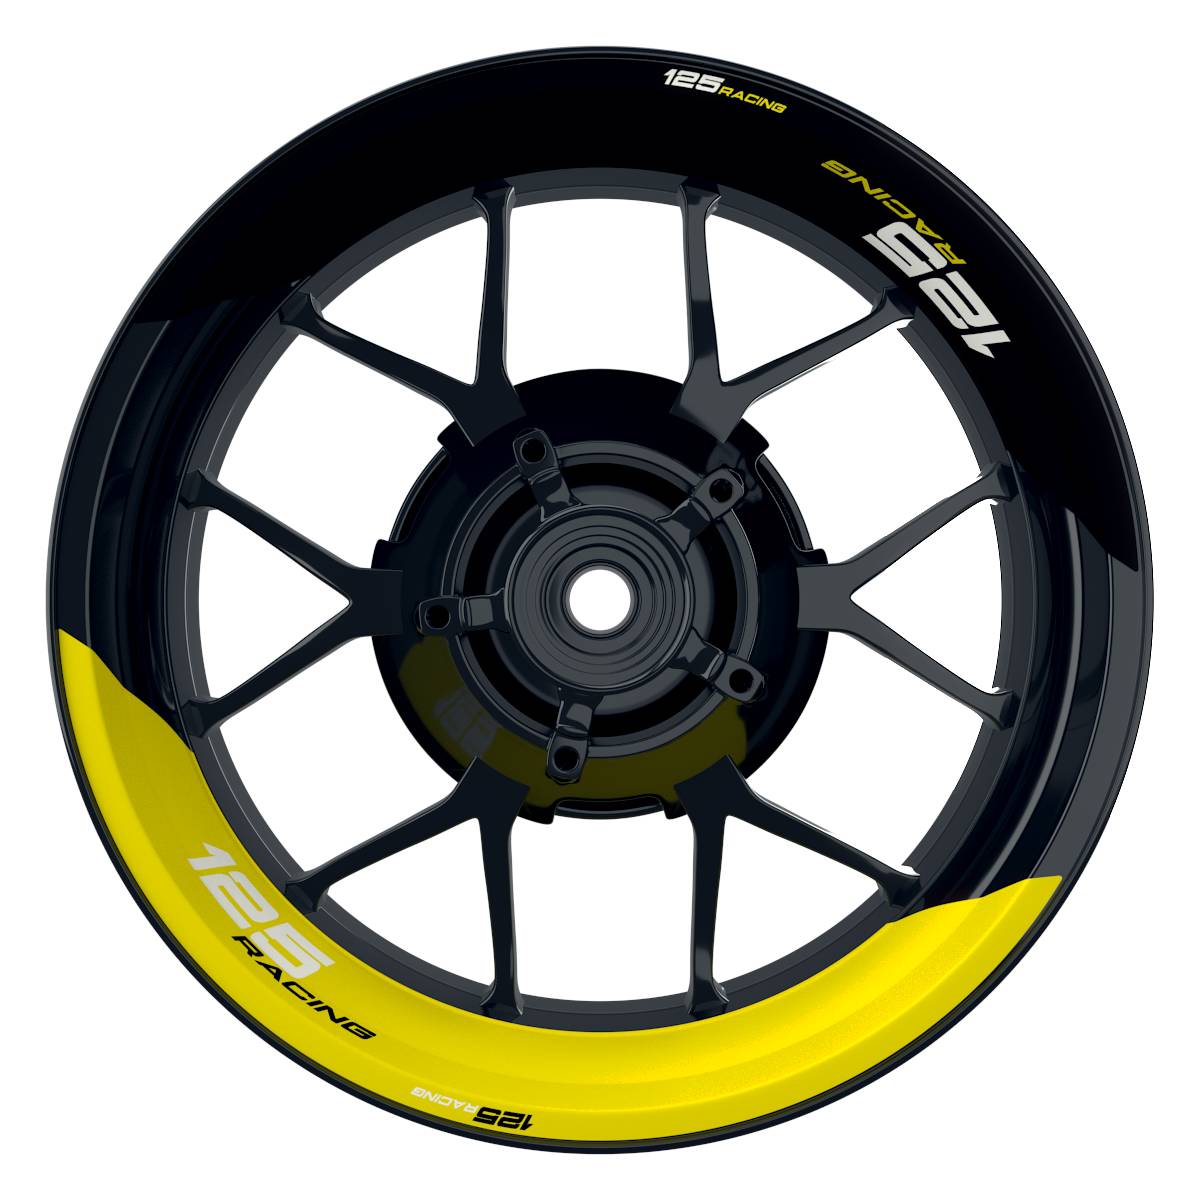 KTM Racing 125 halb halb schwarz gelb Frontansicht